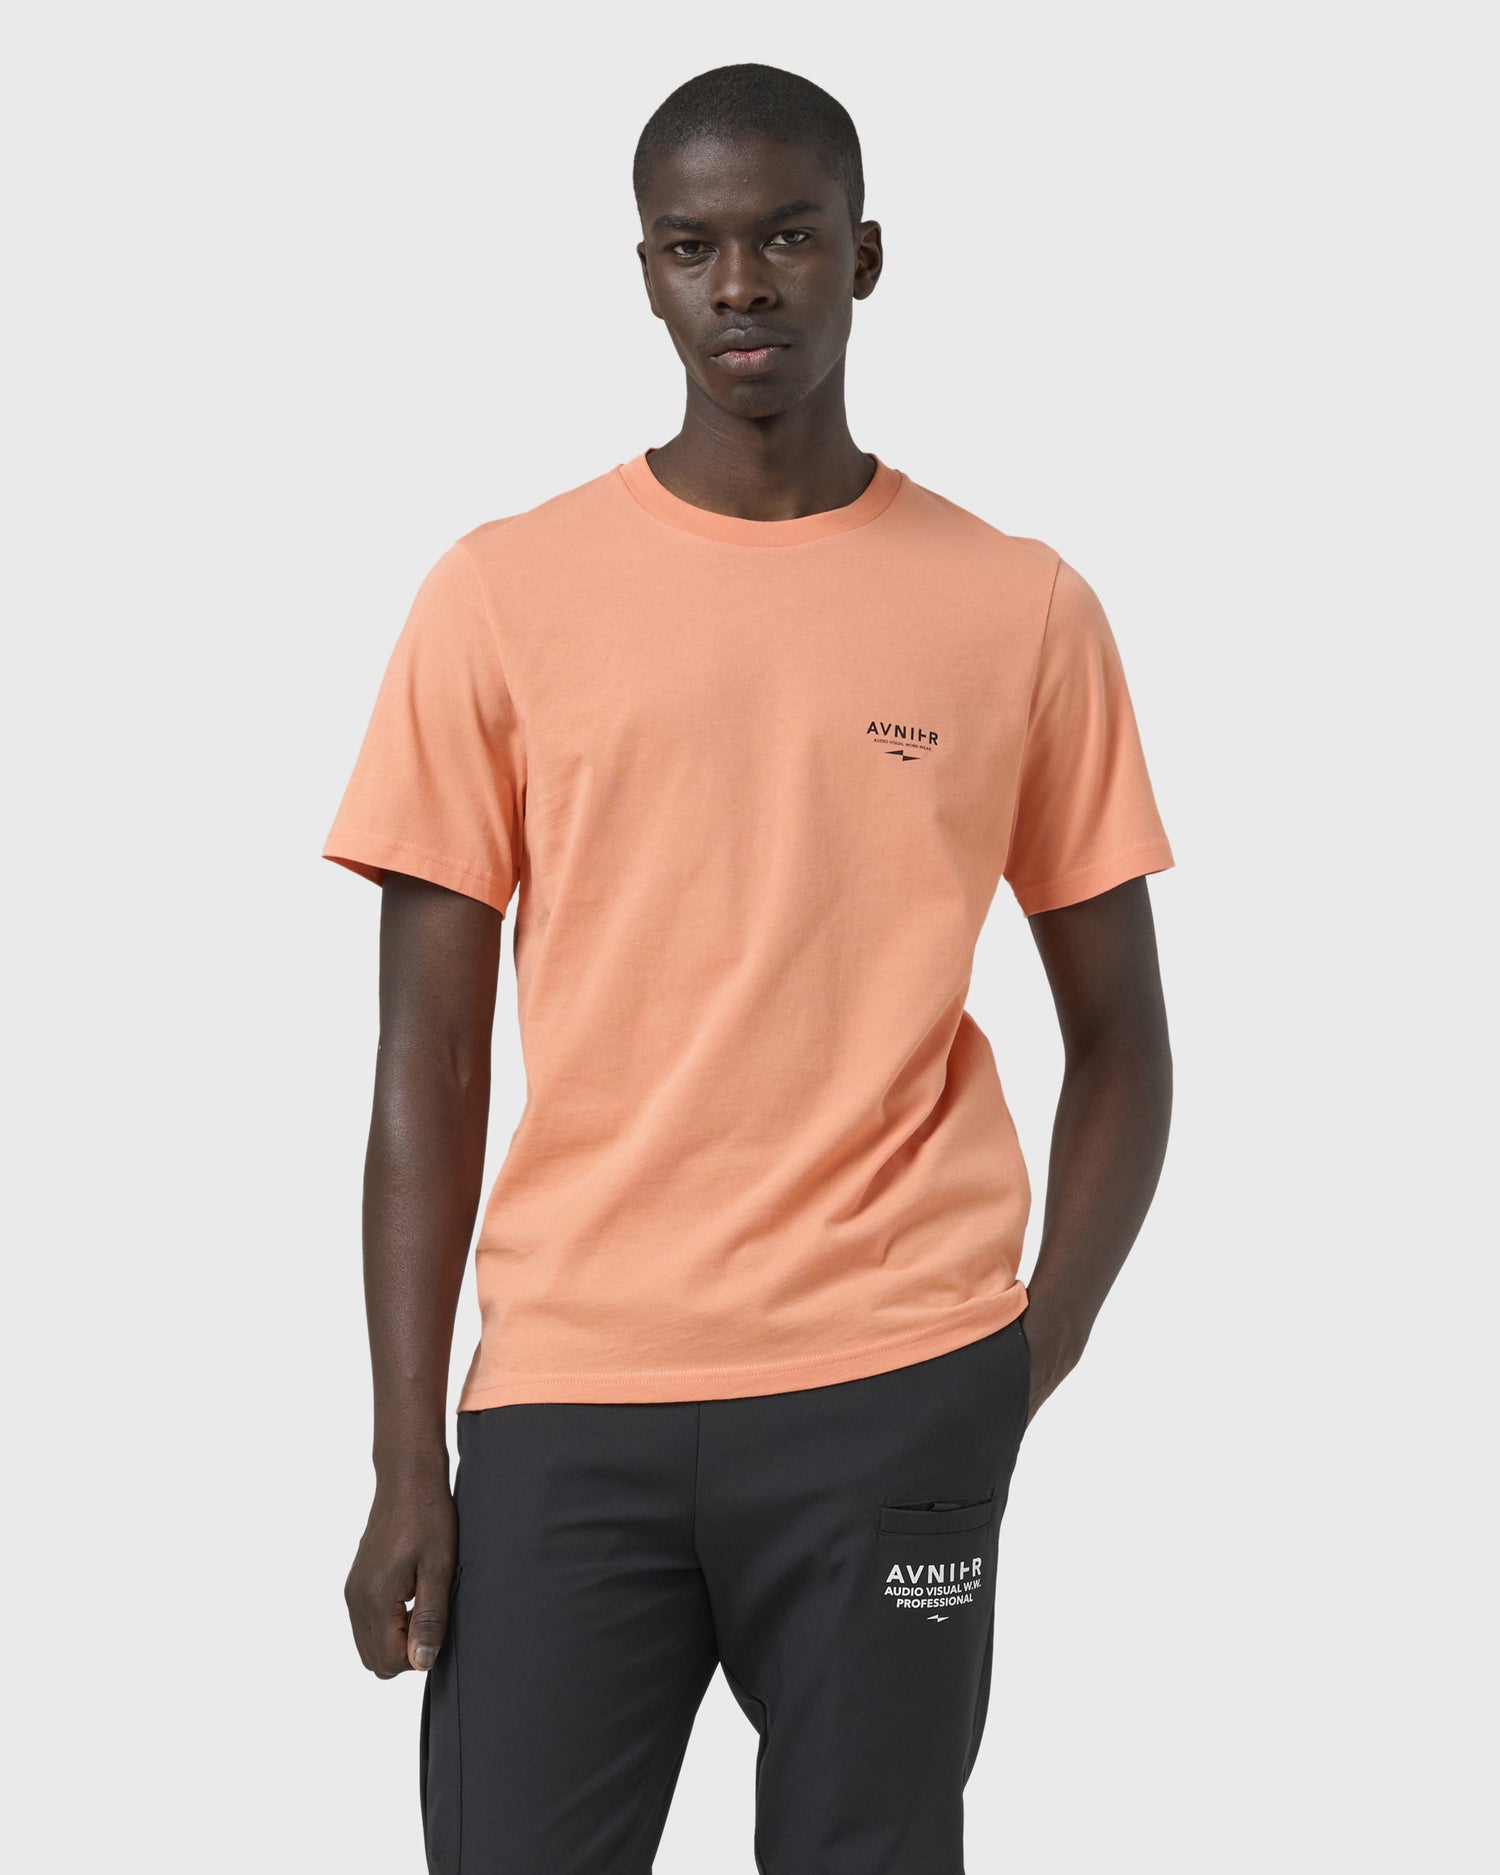 t-shirt-source-vertical-orange-avnier-avnir-2-silhouette-face-2 - Orange vibrant